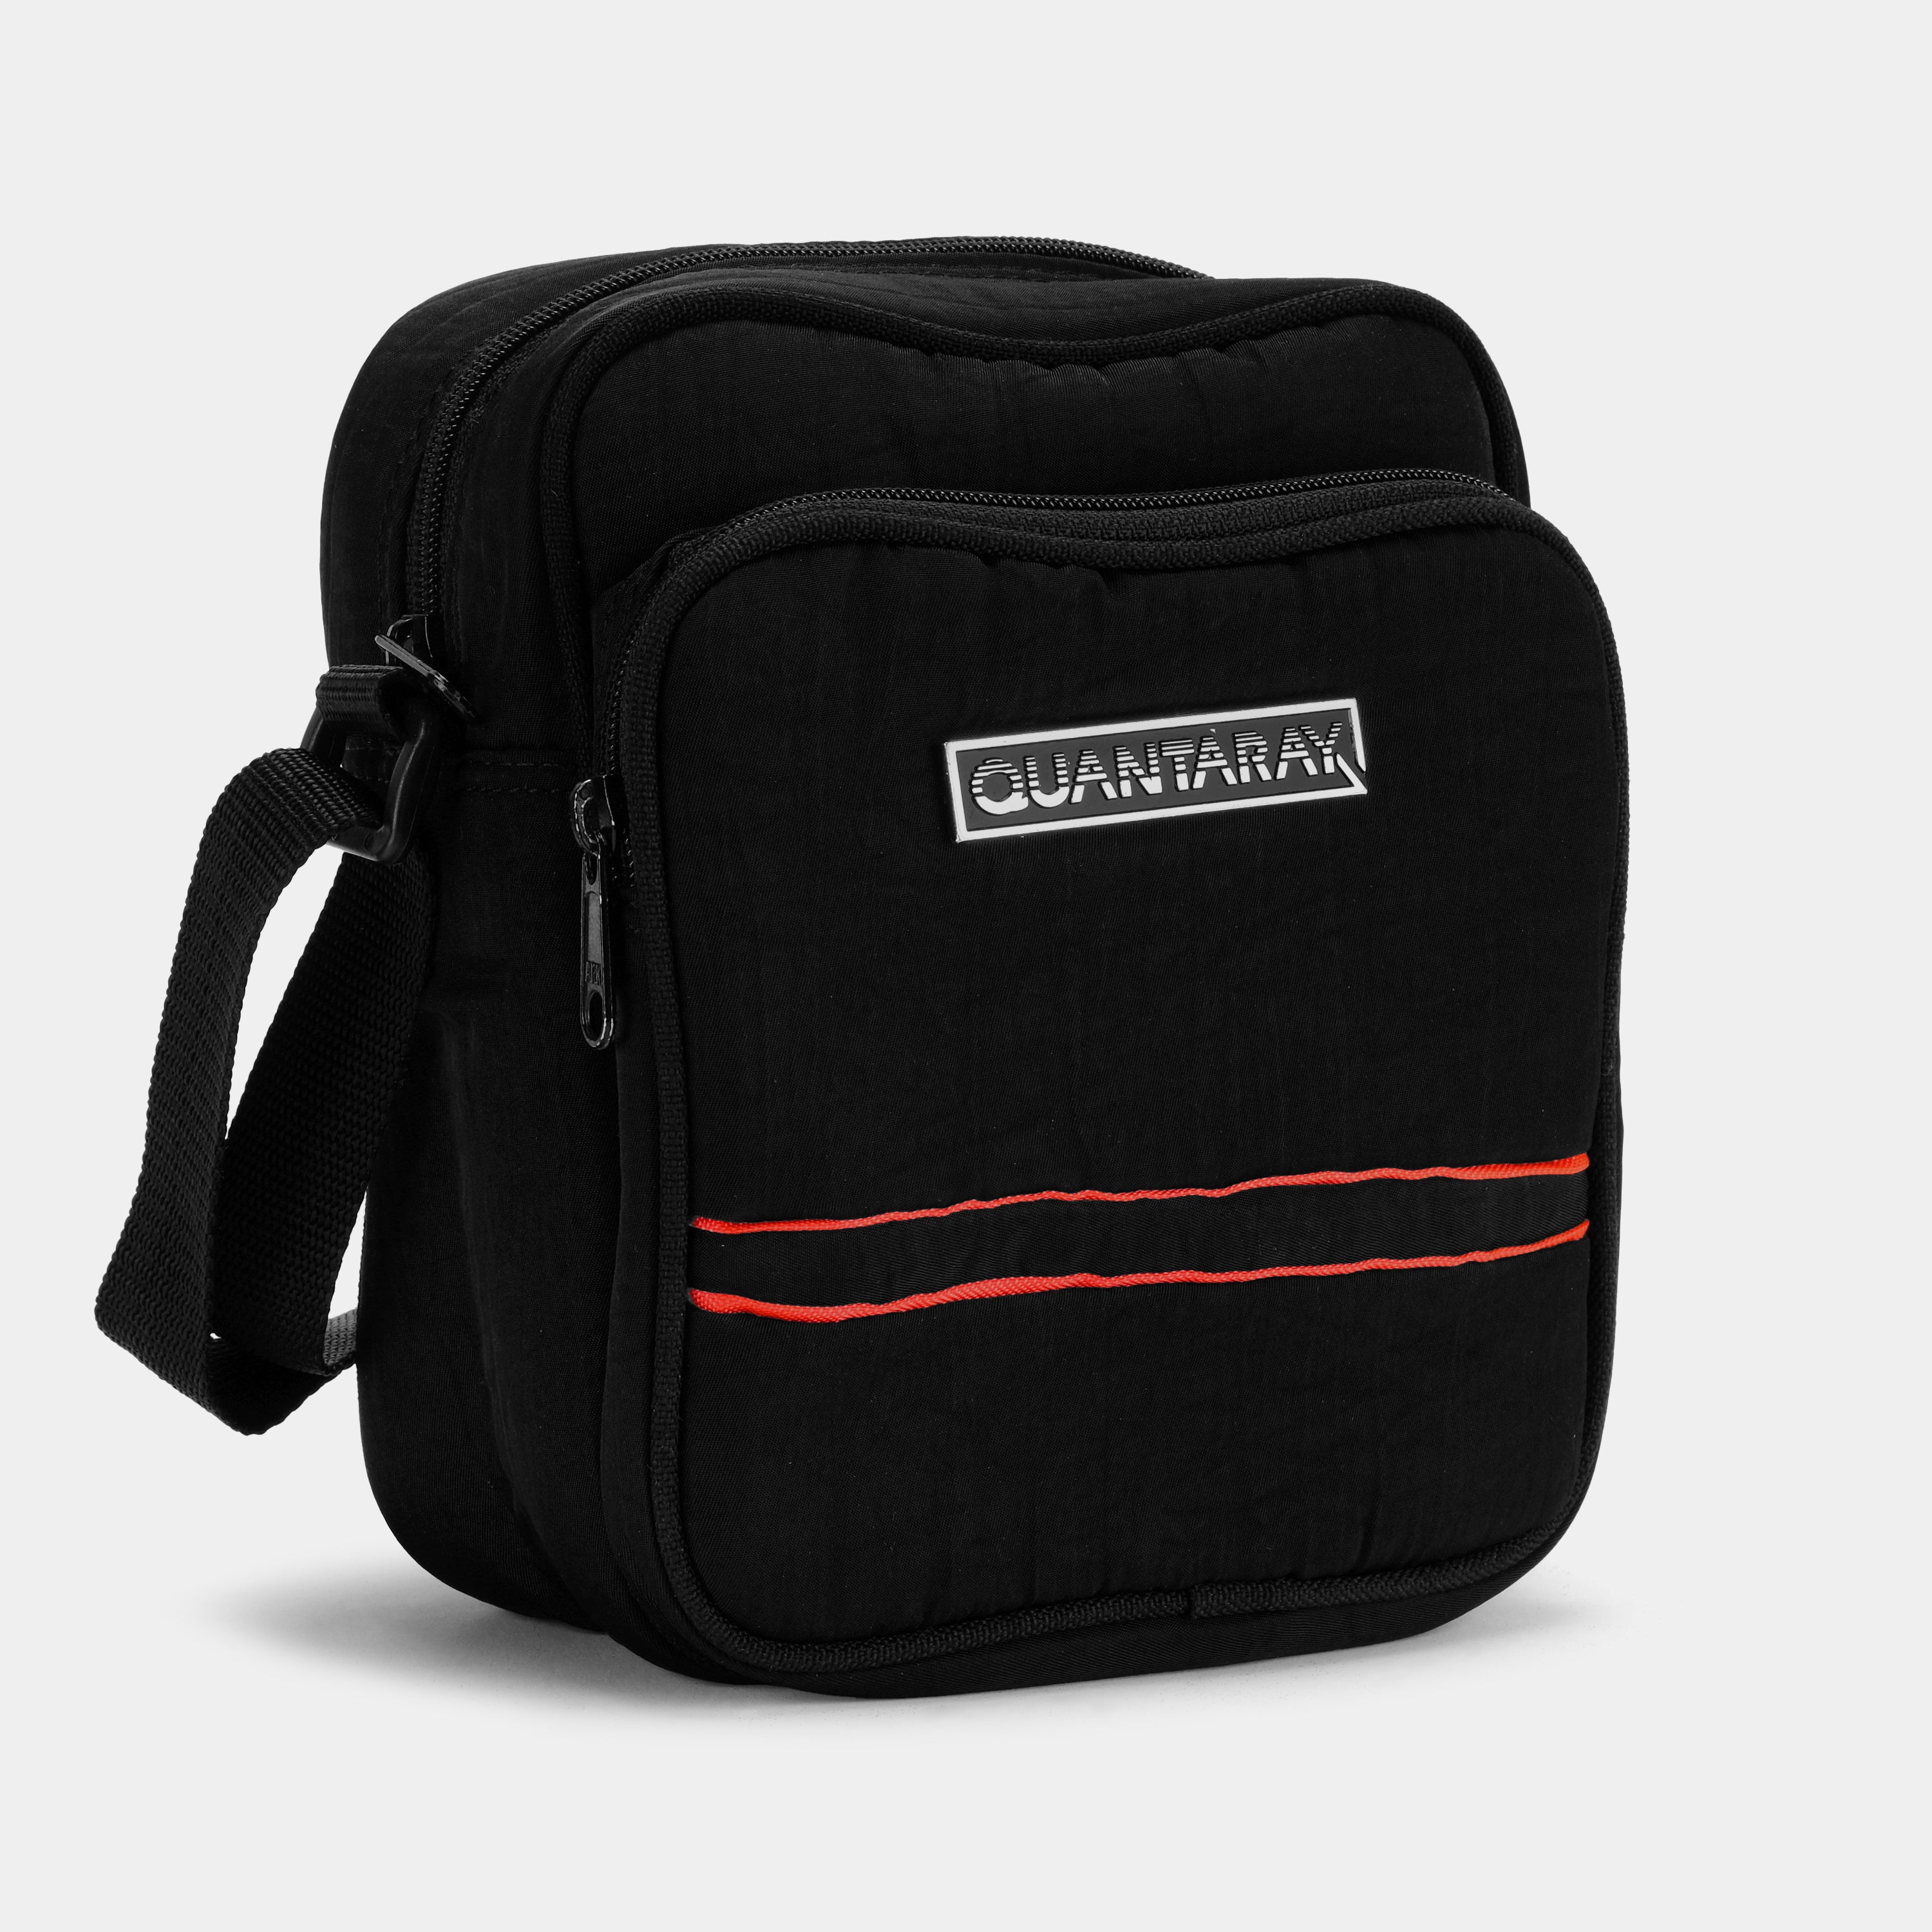 Quantaray Black Camera Bag with Red Stripes